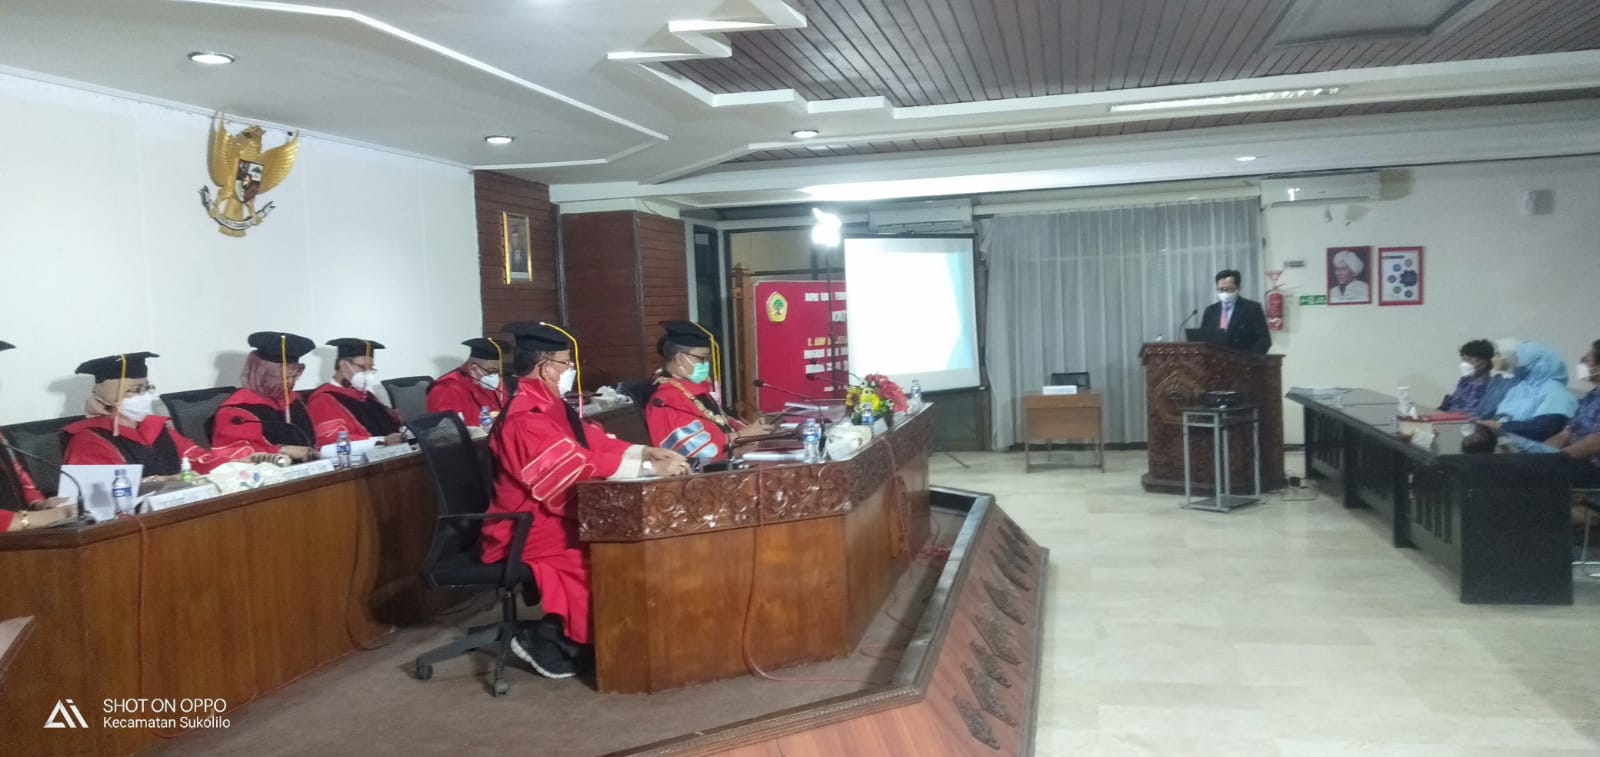 Ujian Terbuka R. Arif Muljohadi Fakultas Hukum Untag Surabaya